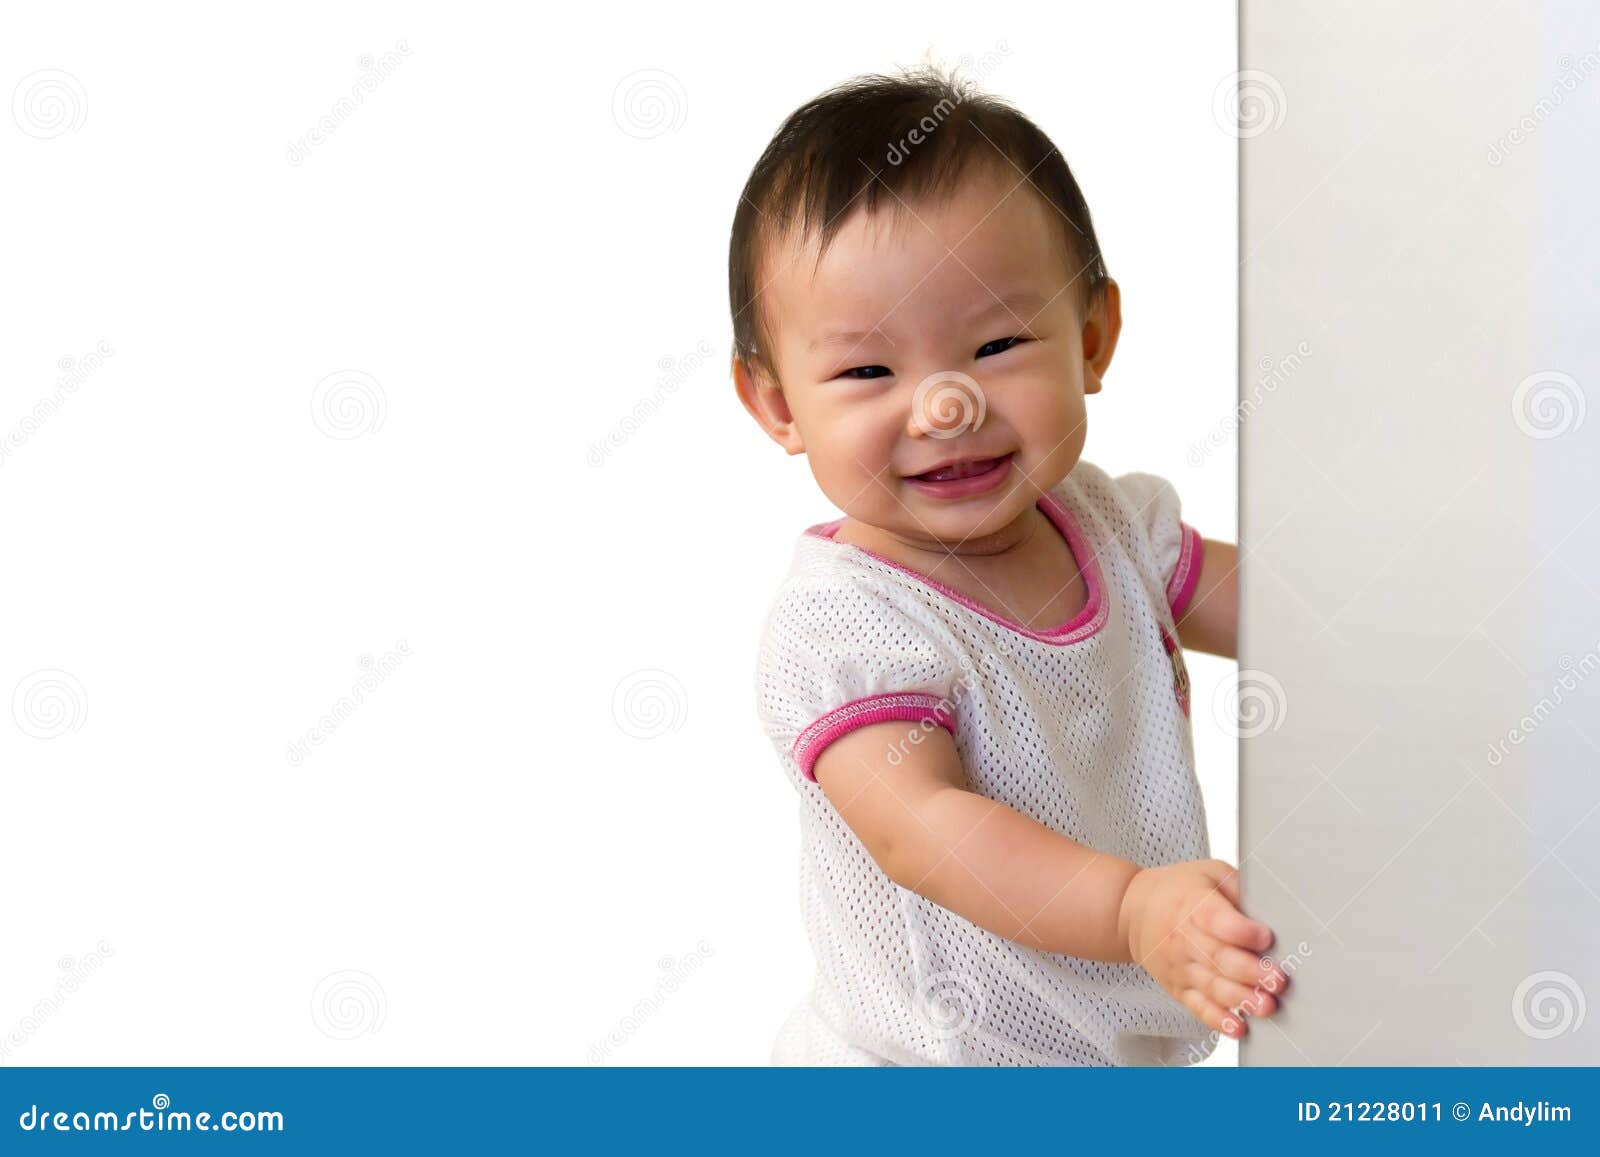 Asiatique Bebe De 10 Mois Avec Le Sourire Effronte Image Stock Image Du Gnangnan Fond